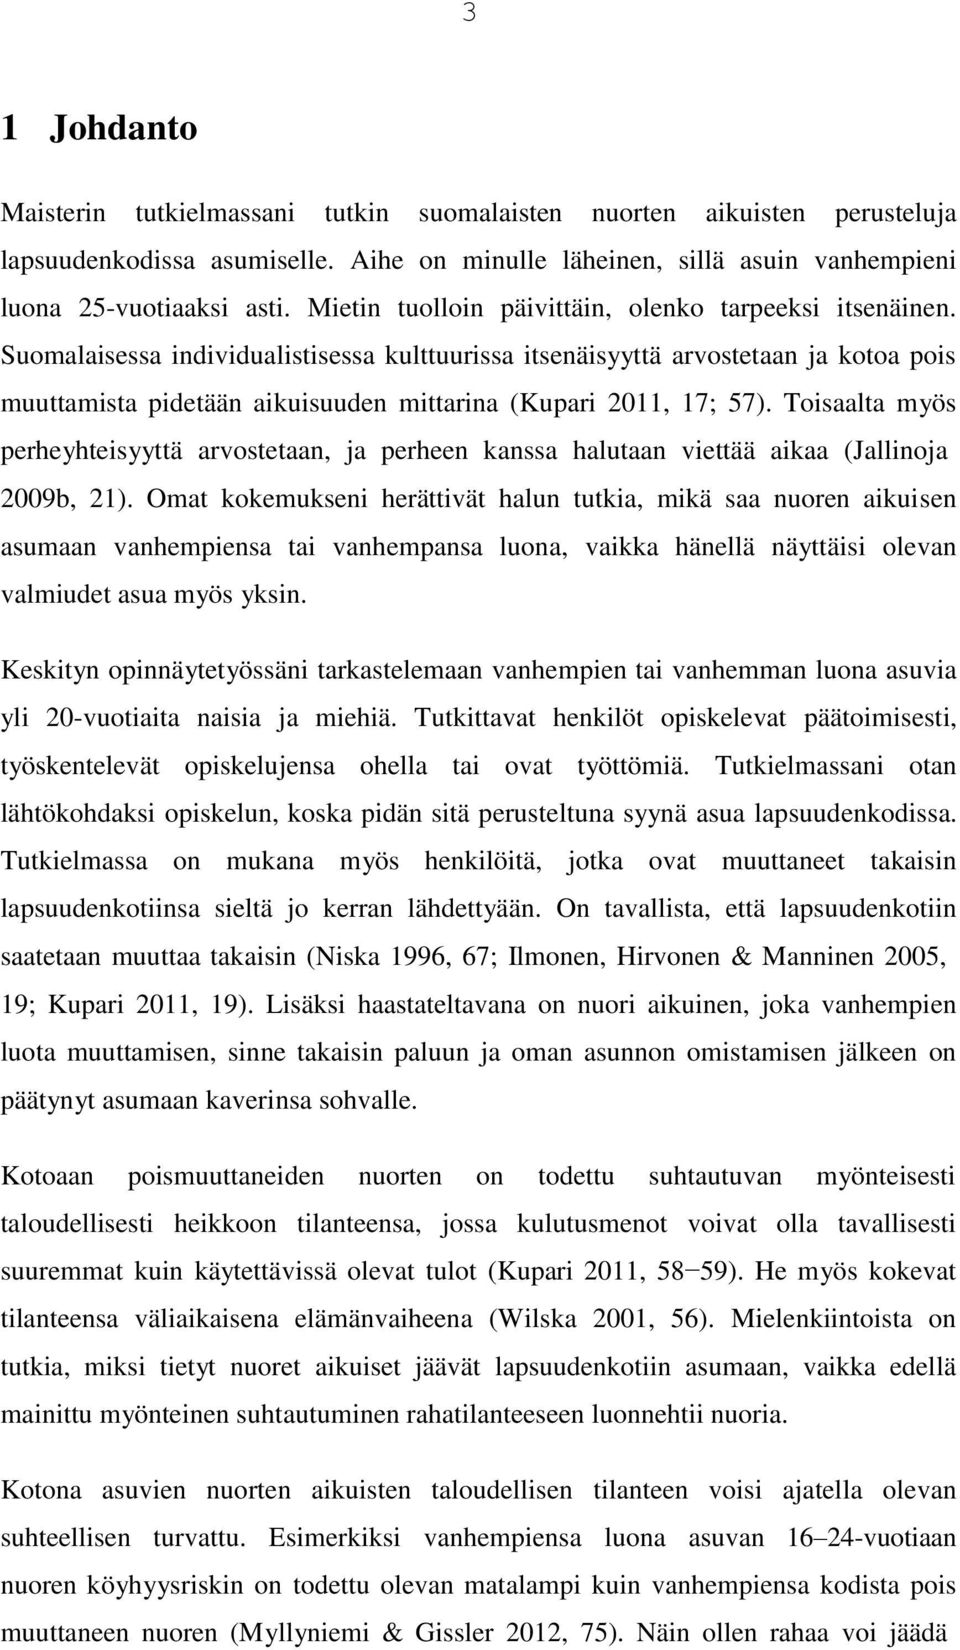 Suomalaisessa individualistisessa kulttuurissa itsenäisyyttä arvostetaan ja kotoa pois muuttamista pidetään aikuisuuden mittarina (Kupari 2011, 17; 57).